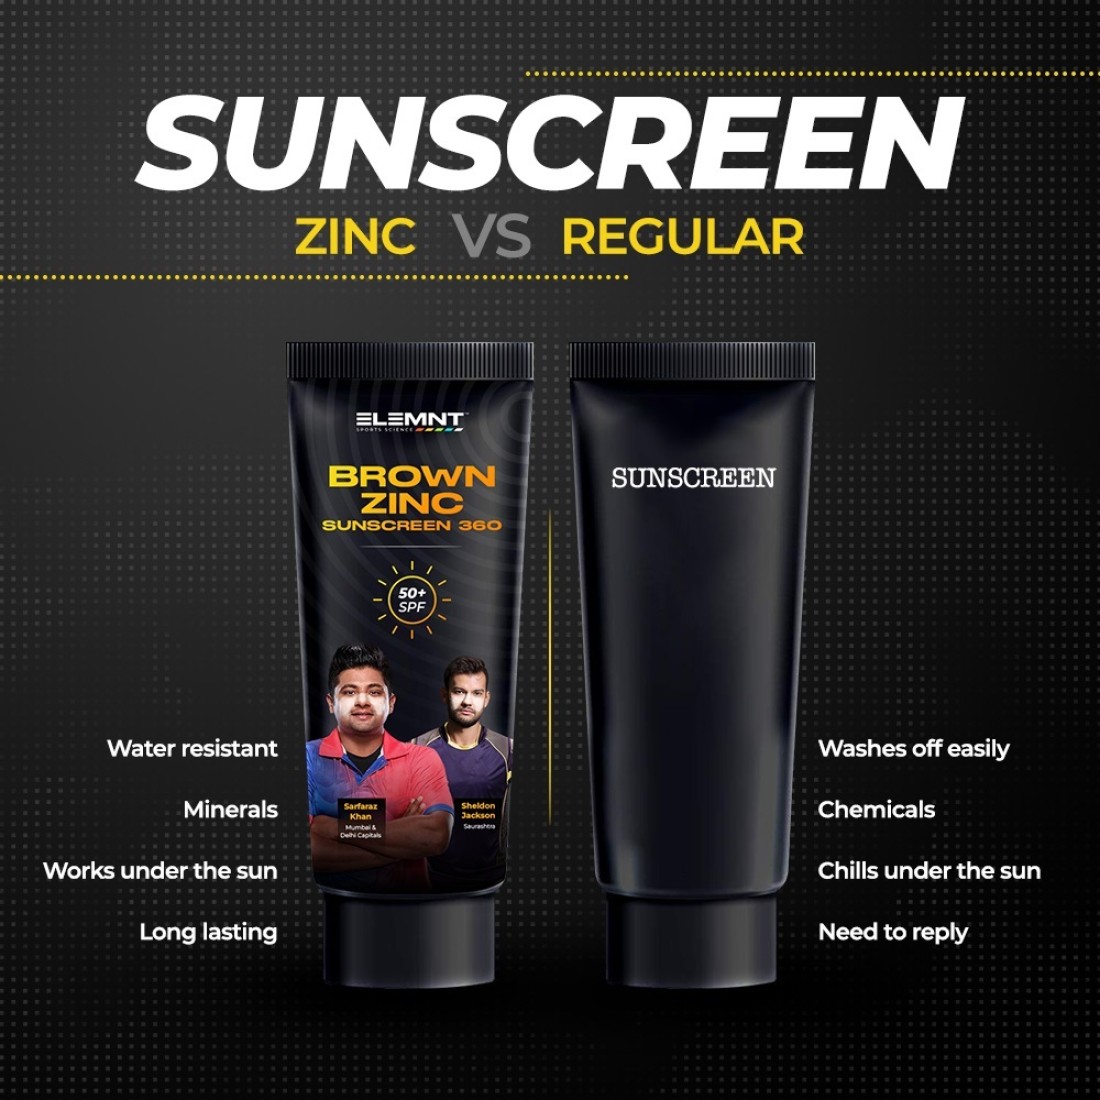 Elemnt Life Brown Zinc Sunscreen 360 - Zinc Oxide Sunscreen - SPF